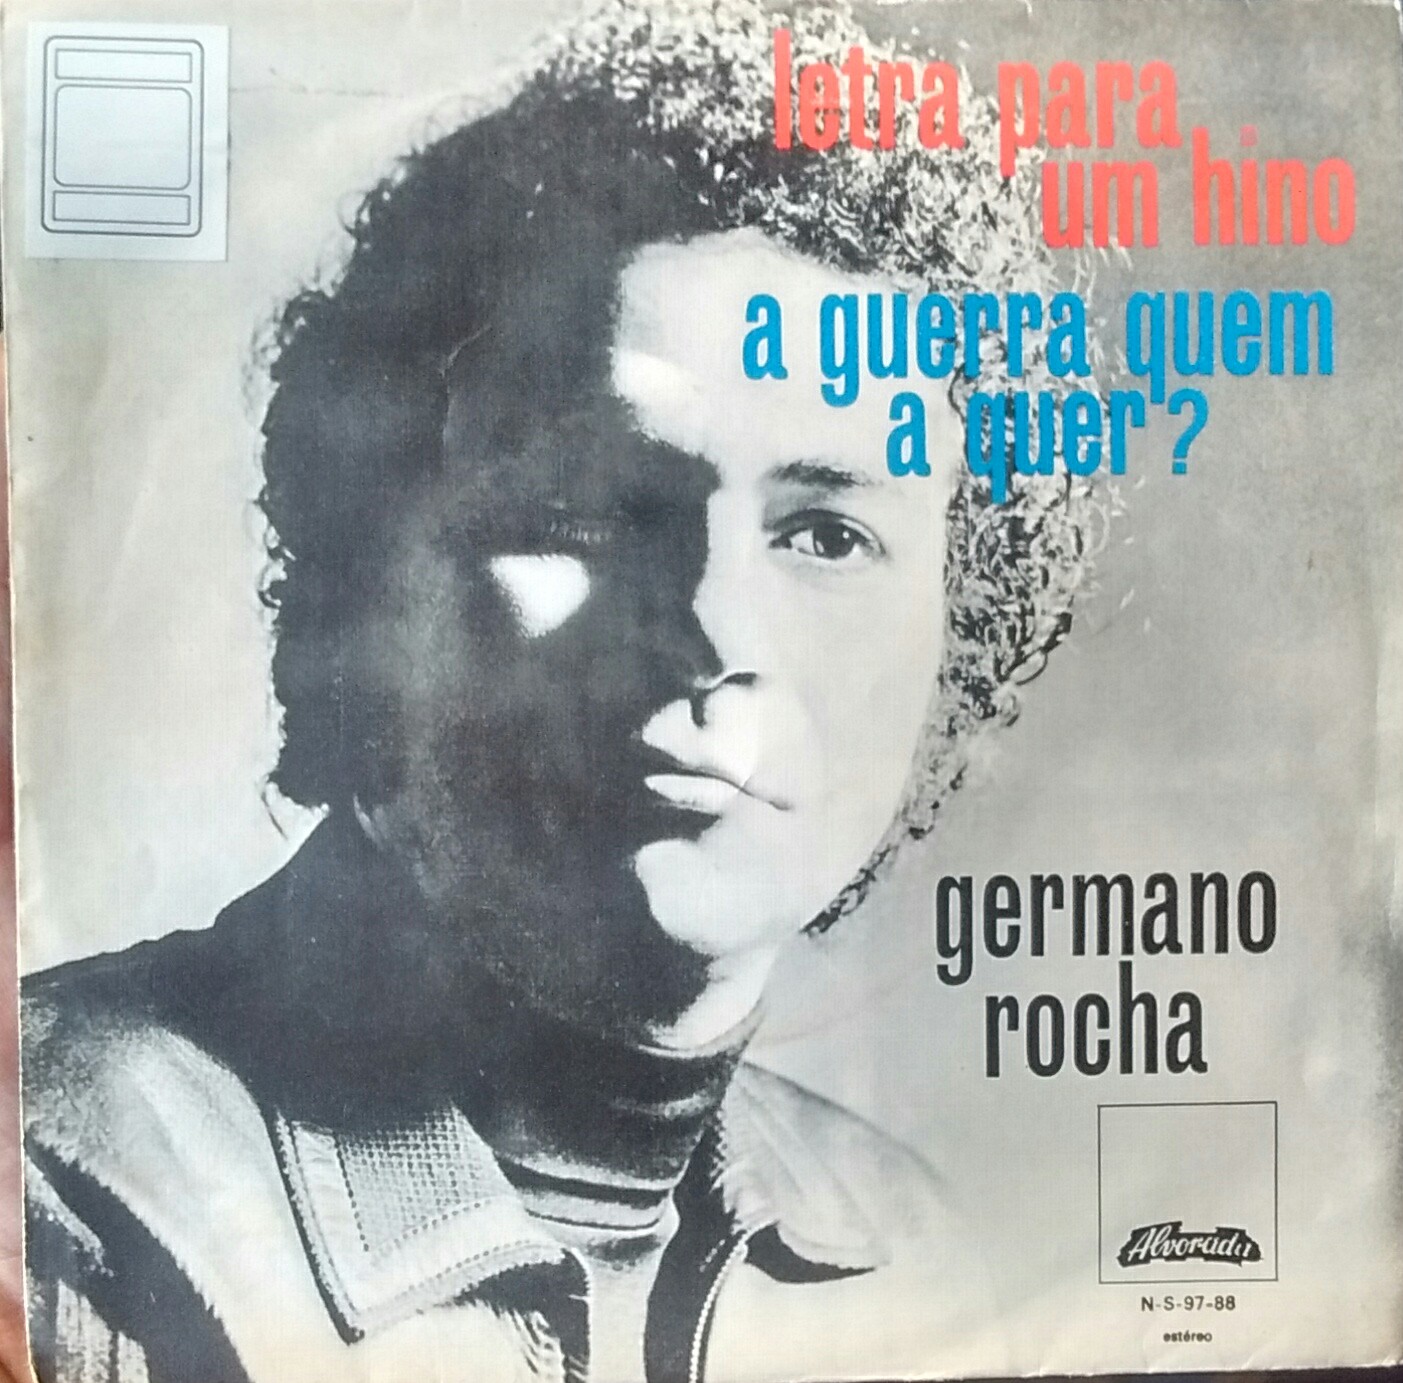 Germano2BRocha2Bdelantera - Germano Rocha - Letra para um Hino (1975)